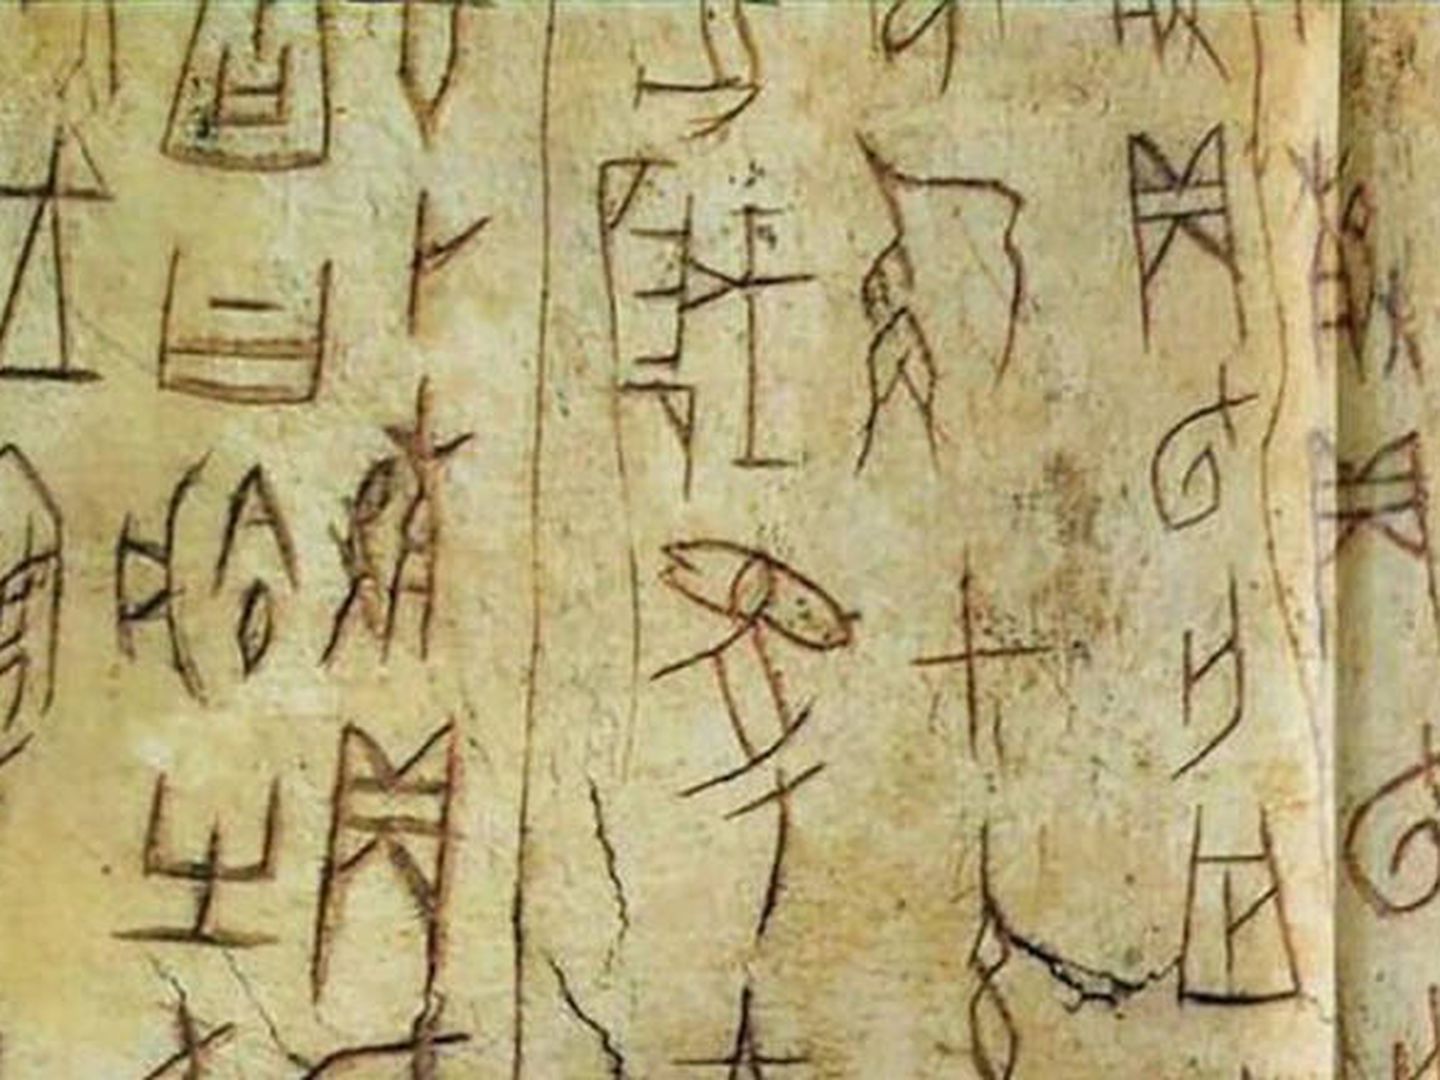 Quedan más de 3.000 símbolos por descifrar. (Museo Nacional de Escritura China)